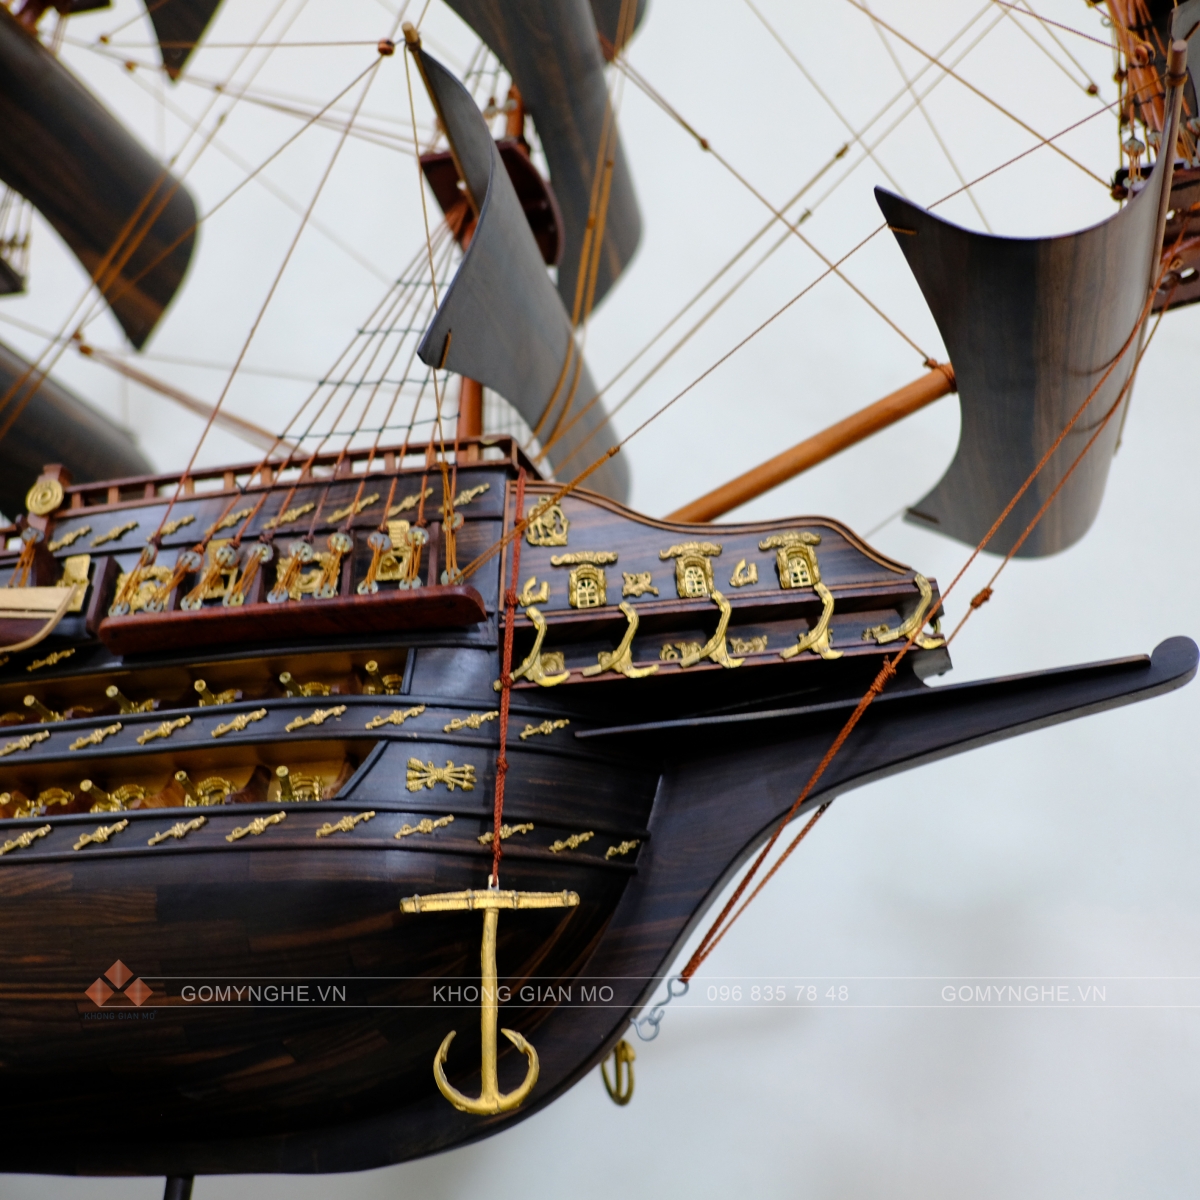 thuyền gỗ thuận buồm xuôi gió phong thủy trang trí Quà tặng ý nghĩa đẳng cấp